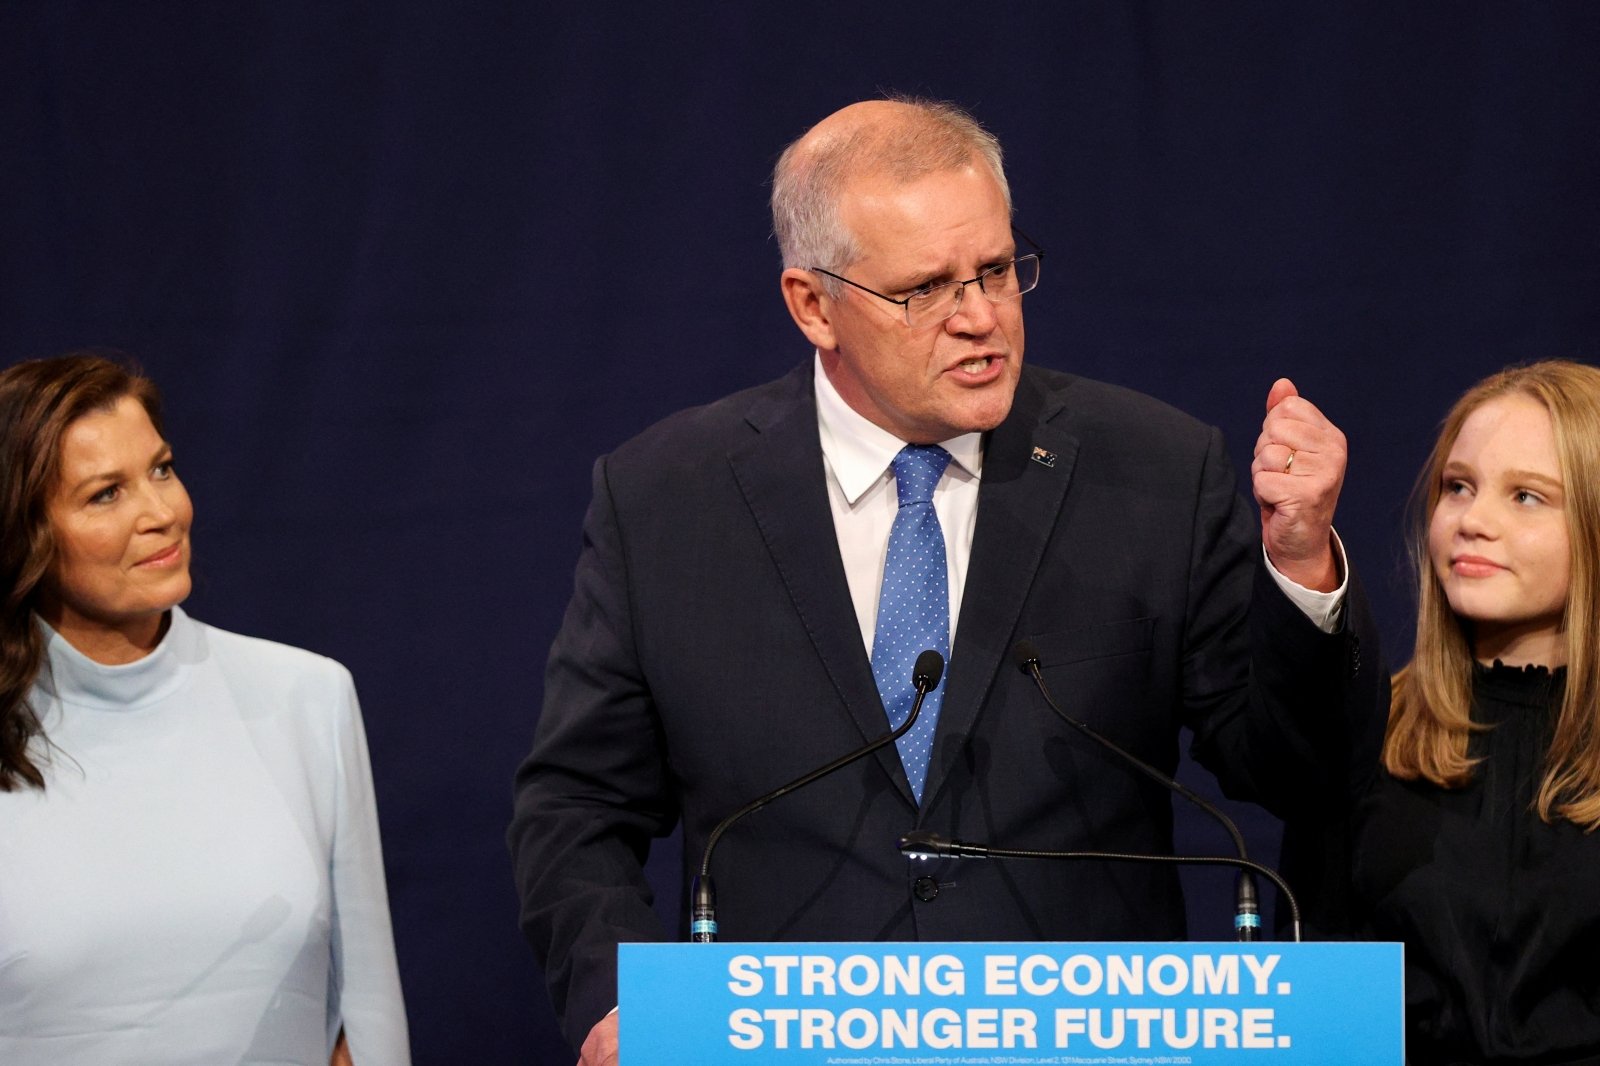 Australijos premjeras pripažino pralaimėjimą rinkimuose